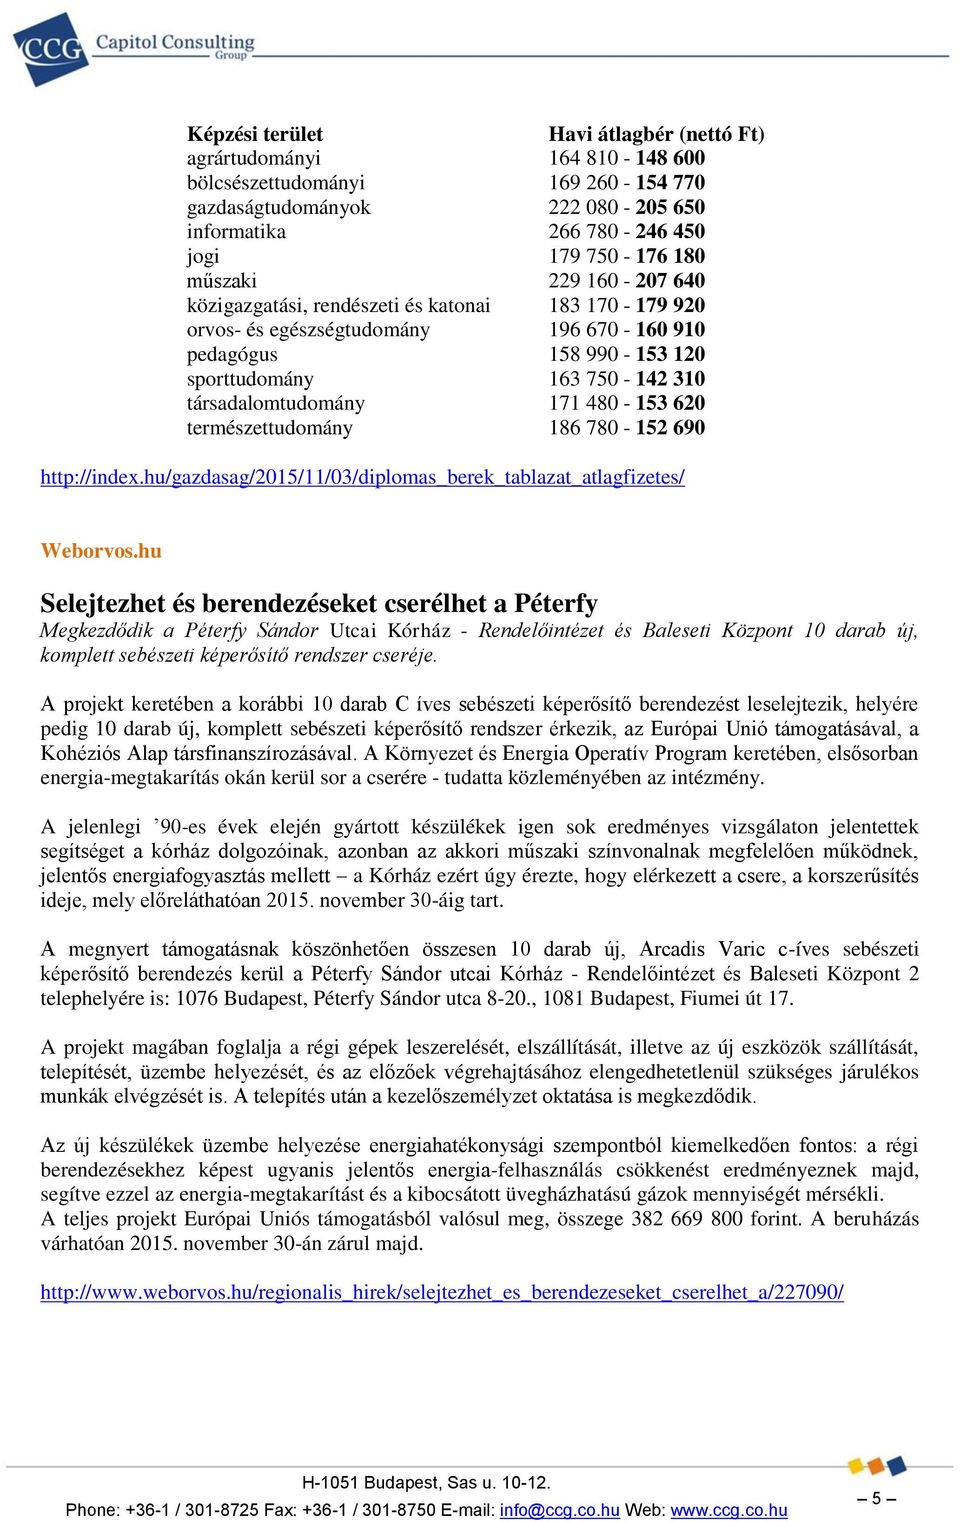 620 természettudomány 186 780-152 690 http://index.hu/gazdasag/2015/11/03/diplomas_berek_tablazat_atlagfizetes/ Weborvos.